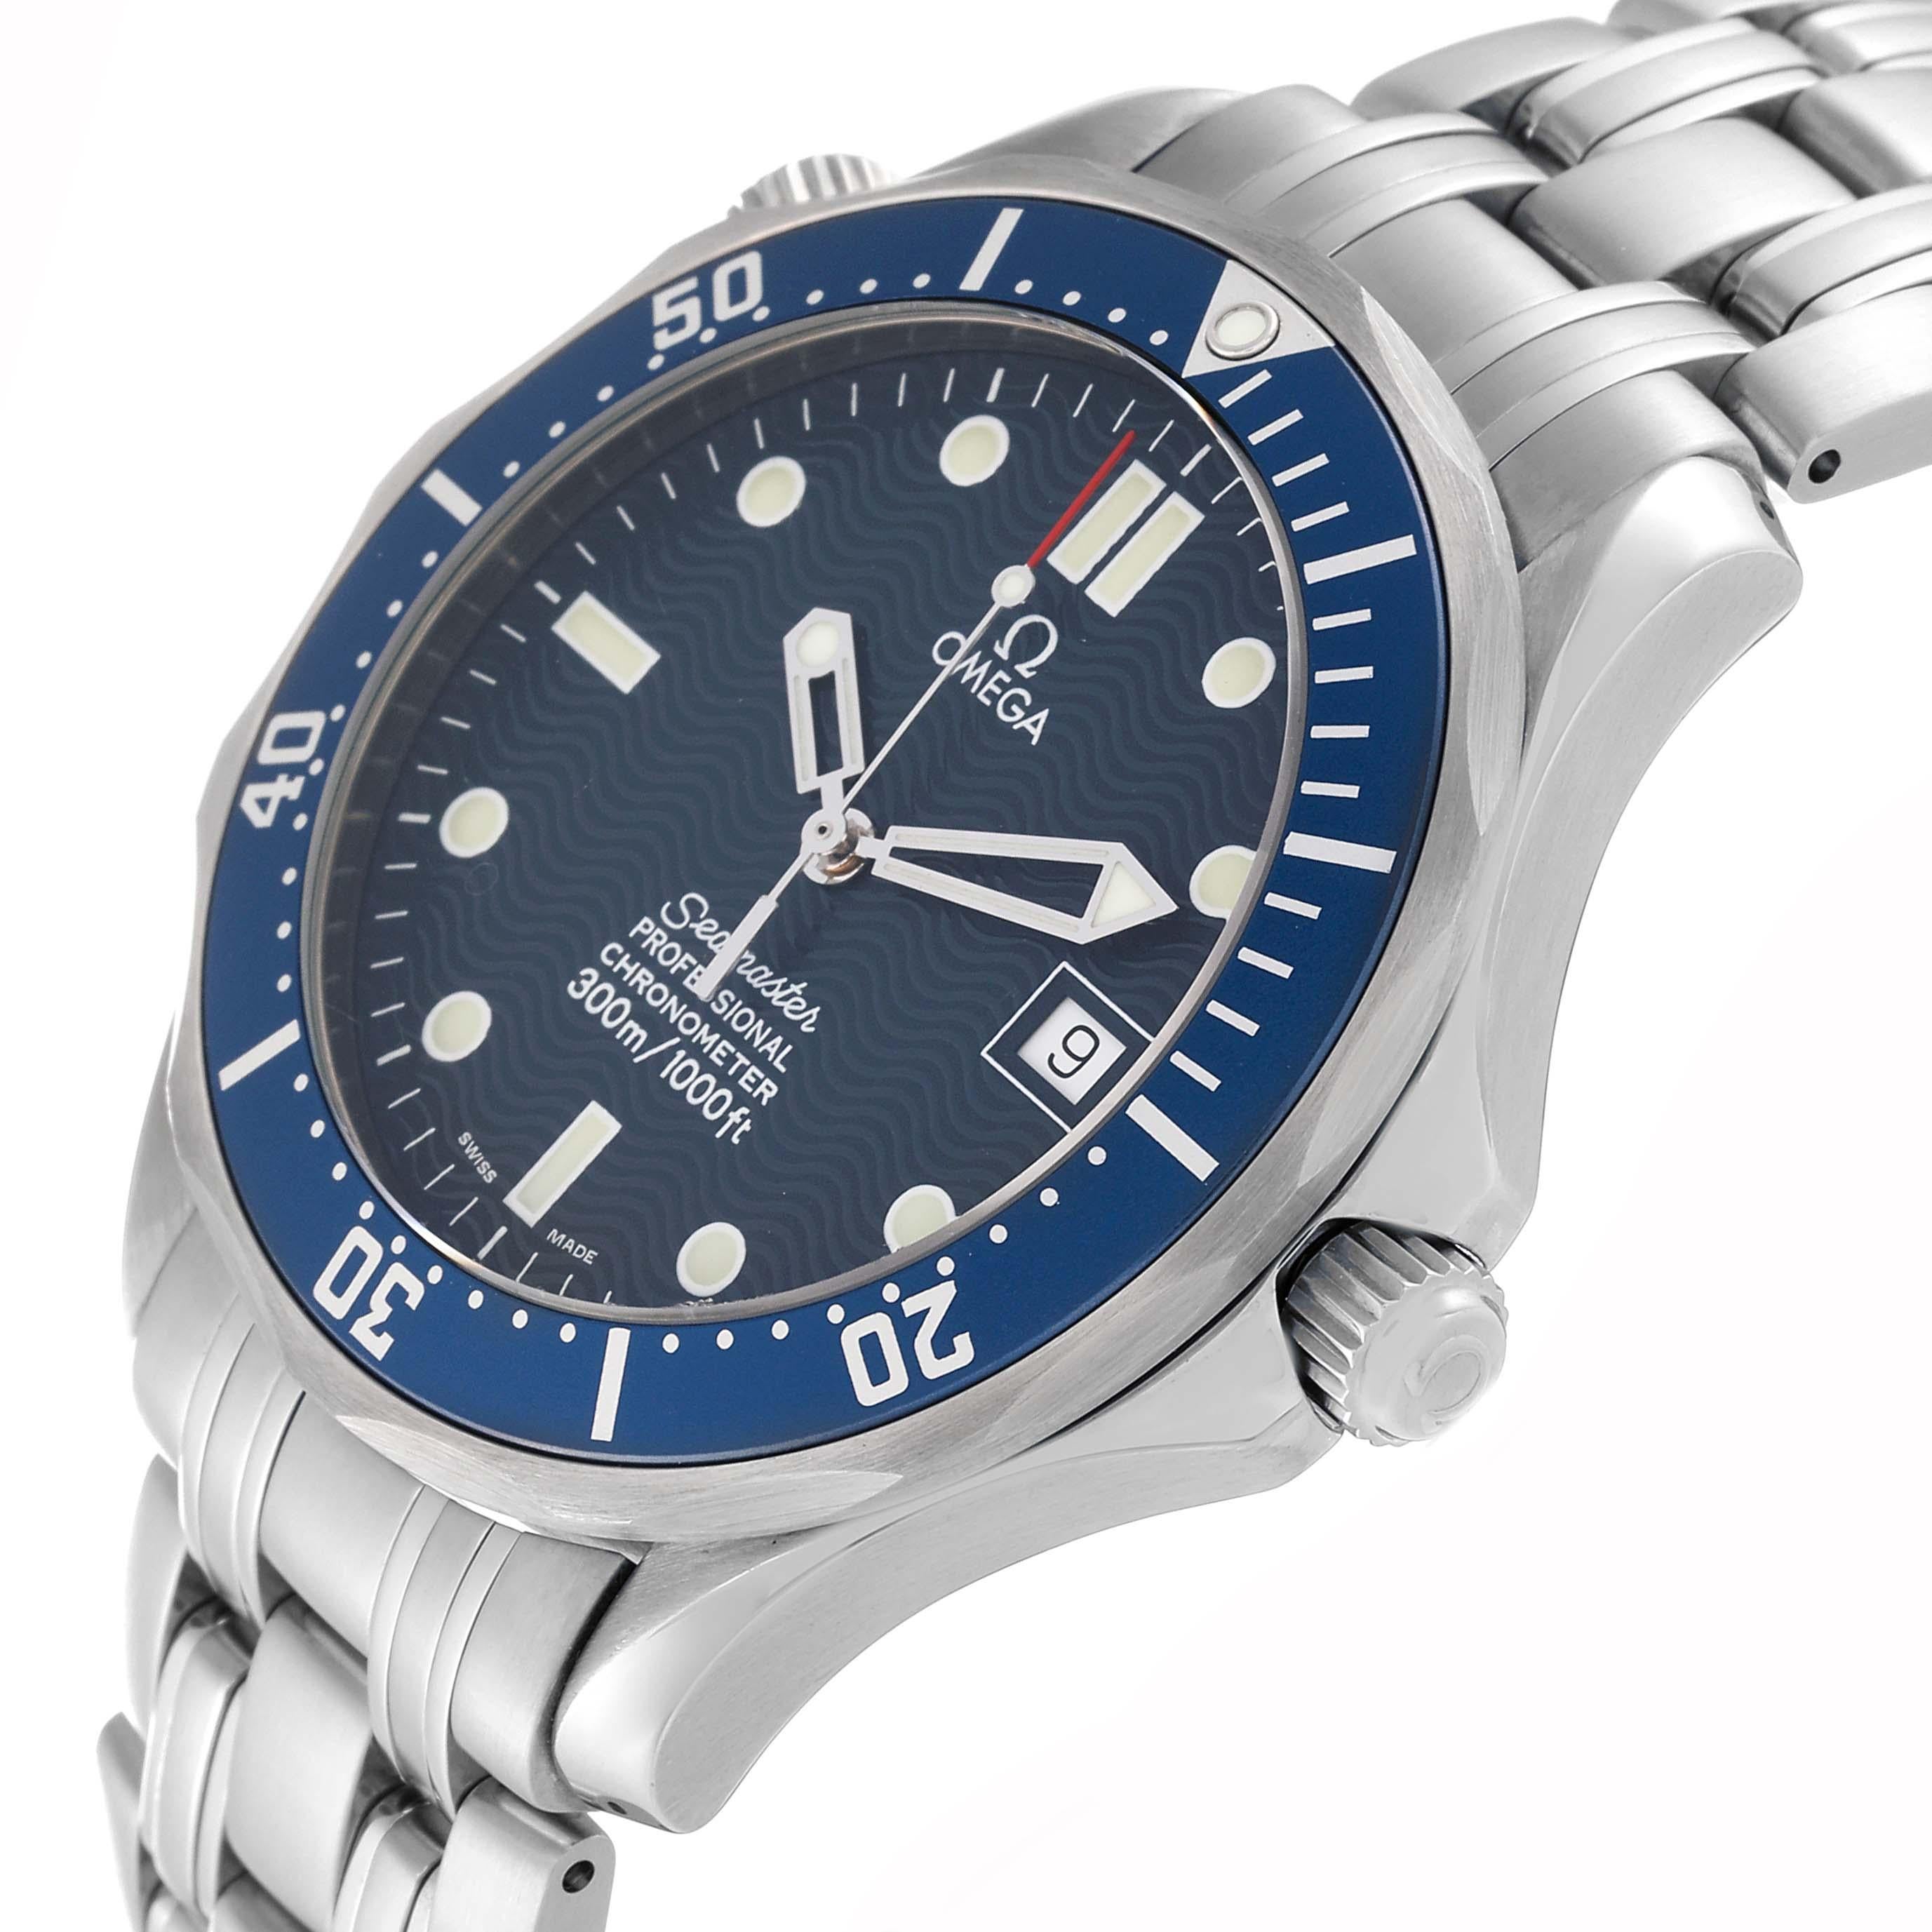 Omega Seamaster Diver 300M Blau Zifferblatt Stahl Herrenuhr 2531.80.00. Automatisches Uhrwerk mit Selbstaufzug. Gehäuse aus Edelstahl mit einem Durchmesser von 41.0 mm. Omega-Logo auf der Krone. Heliumauslassventil auf 10 Uhr. Blaue, einseitig